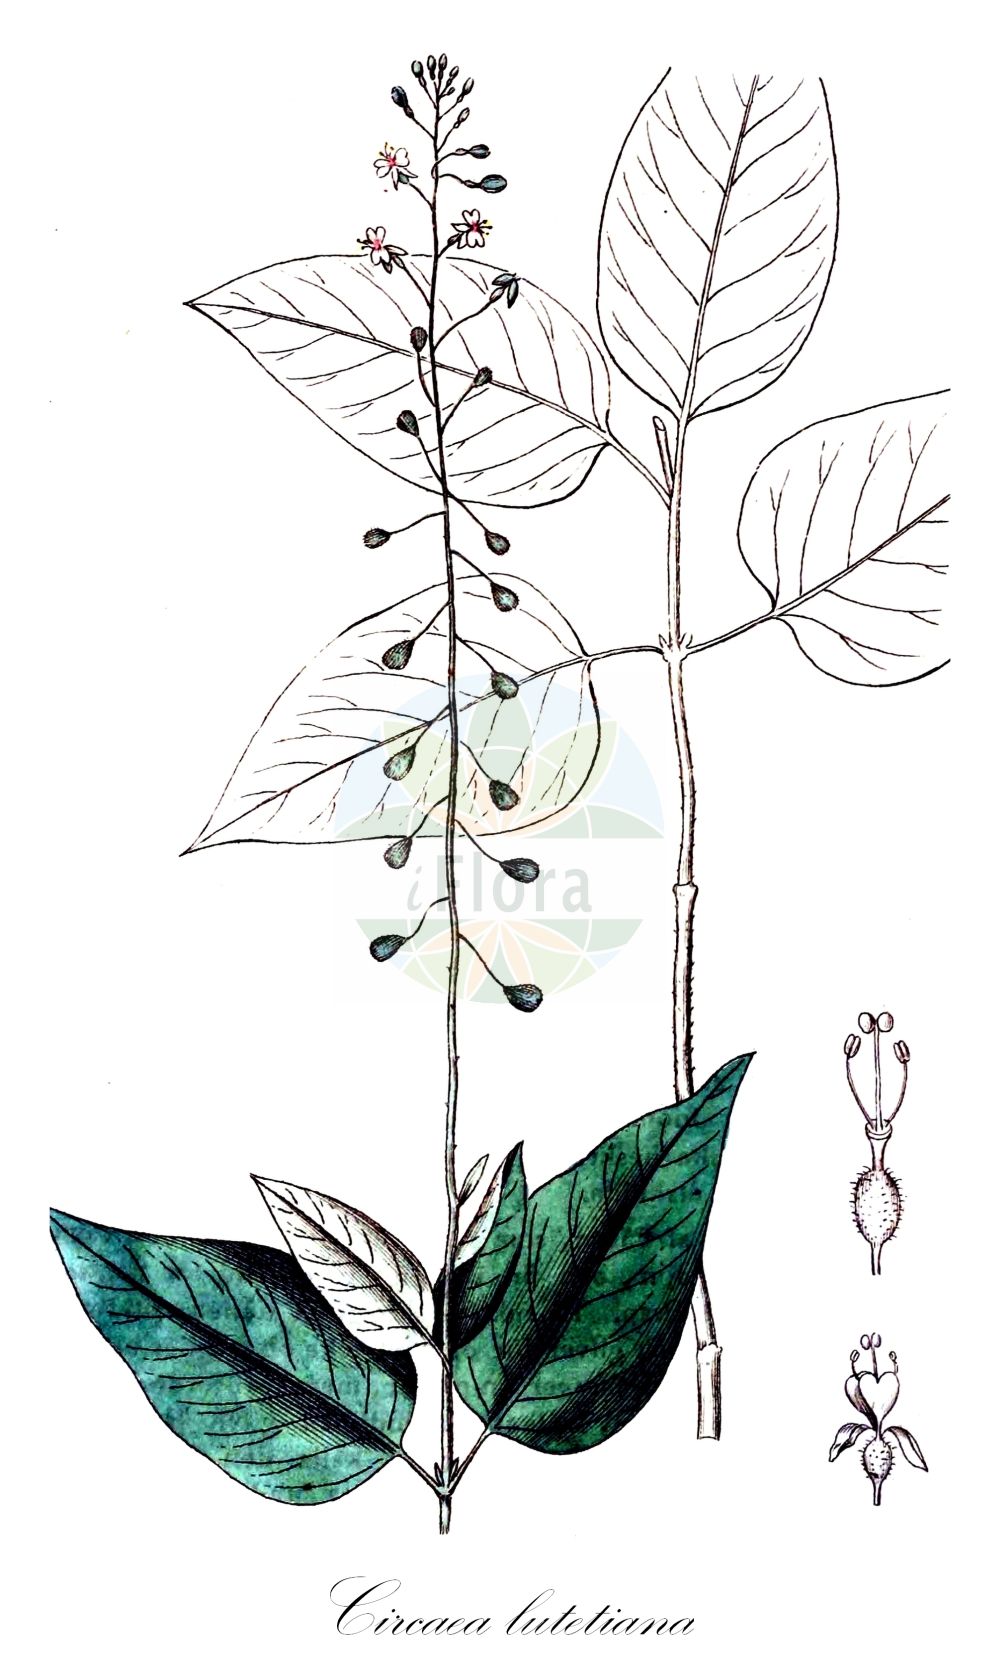 Historische Abbildung von Circaea lutetiana (Gewöhnliches Hexenkraut - Enchanter's-nightshade). Das Bild zeigt Blatt, Bluete, Frucht und Same. ---- Historical Drawing of Circaea lutetiana (Gewöhnliches Hexenkraut - Enchanter's-nightshade). The image is showing leaf, flower, fruit and seed.(Circaea lutetiana,Gewöhnliches Hexenkraut,Enchanter's-nightshade,Circaea lutetiana,Gewoehnliches Hexenkraut,Grosses Hexenkraut,Wald-Hexenkraut,Enchanter's-nightshade,Broadleaf Enchanter's Nightshade,Circaea,Hexenkraut,Enchanter's Nightshade,Onagraceae,Nachtkerzengewächse,Evening Primrose family,Blatt,Bluete,Frucht,Same,leaf,flower,fruit,seed,Svensk Botanik (Svensk Botanik))